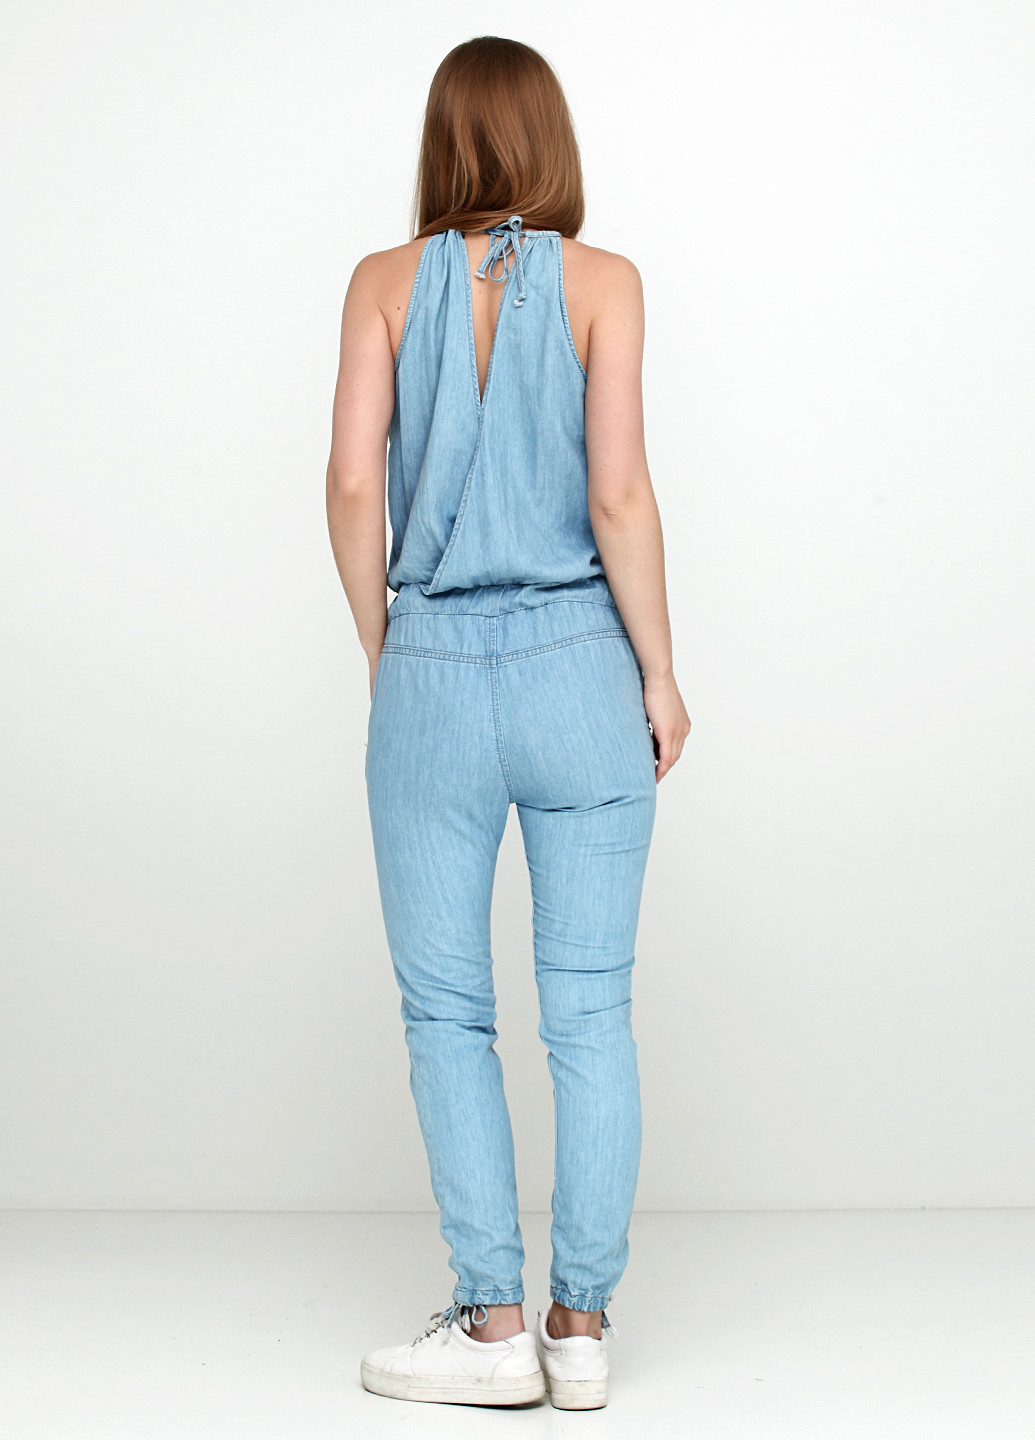 Комбінезон Pepe Jeans комбінезон-брюки однотонний блакитний джинсовий